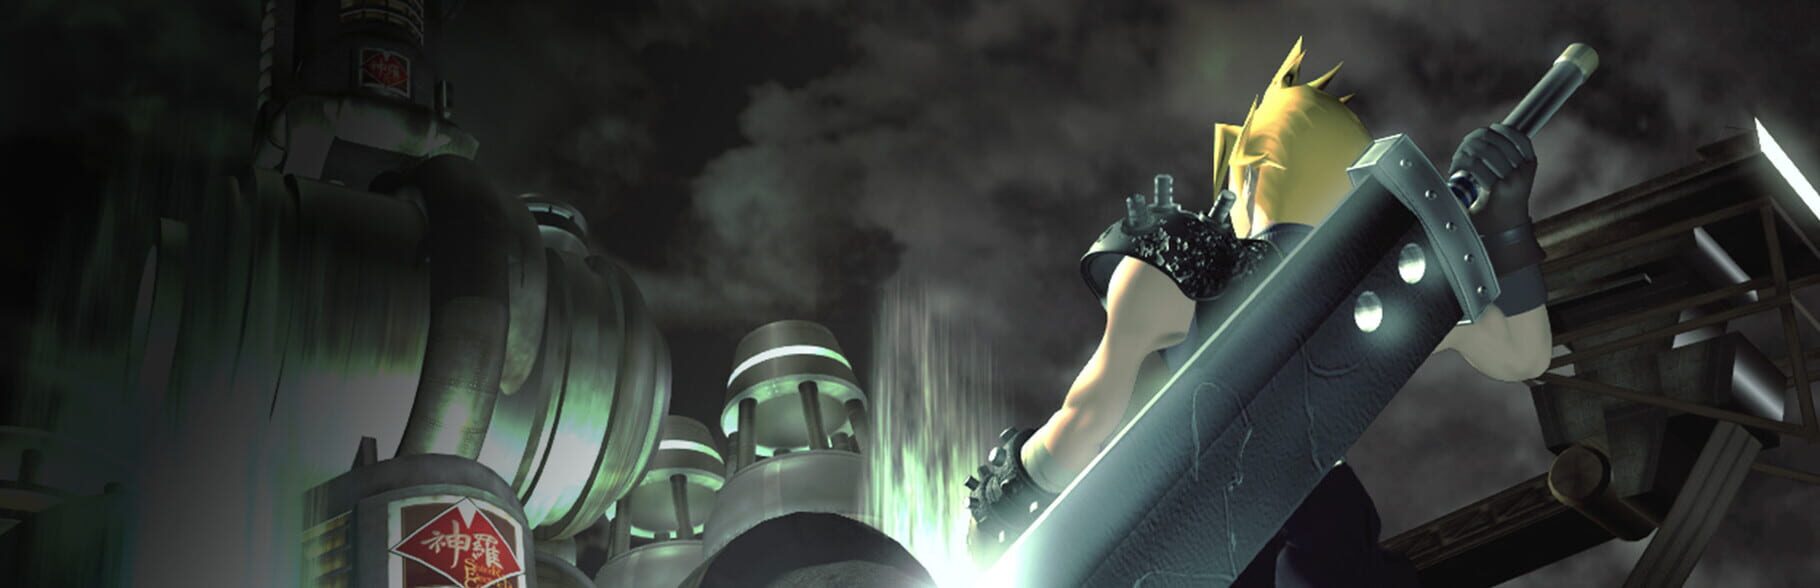 Arte - Final Fantasy VII